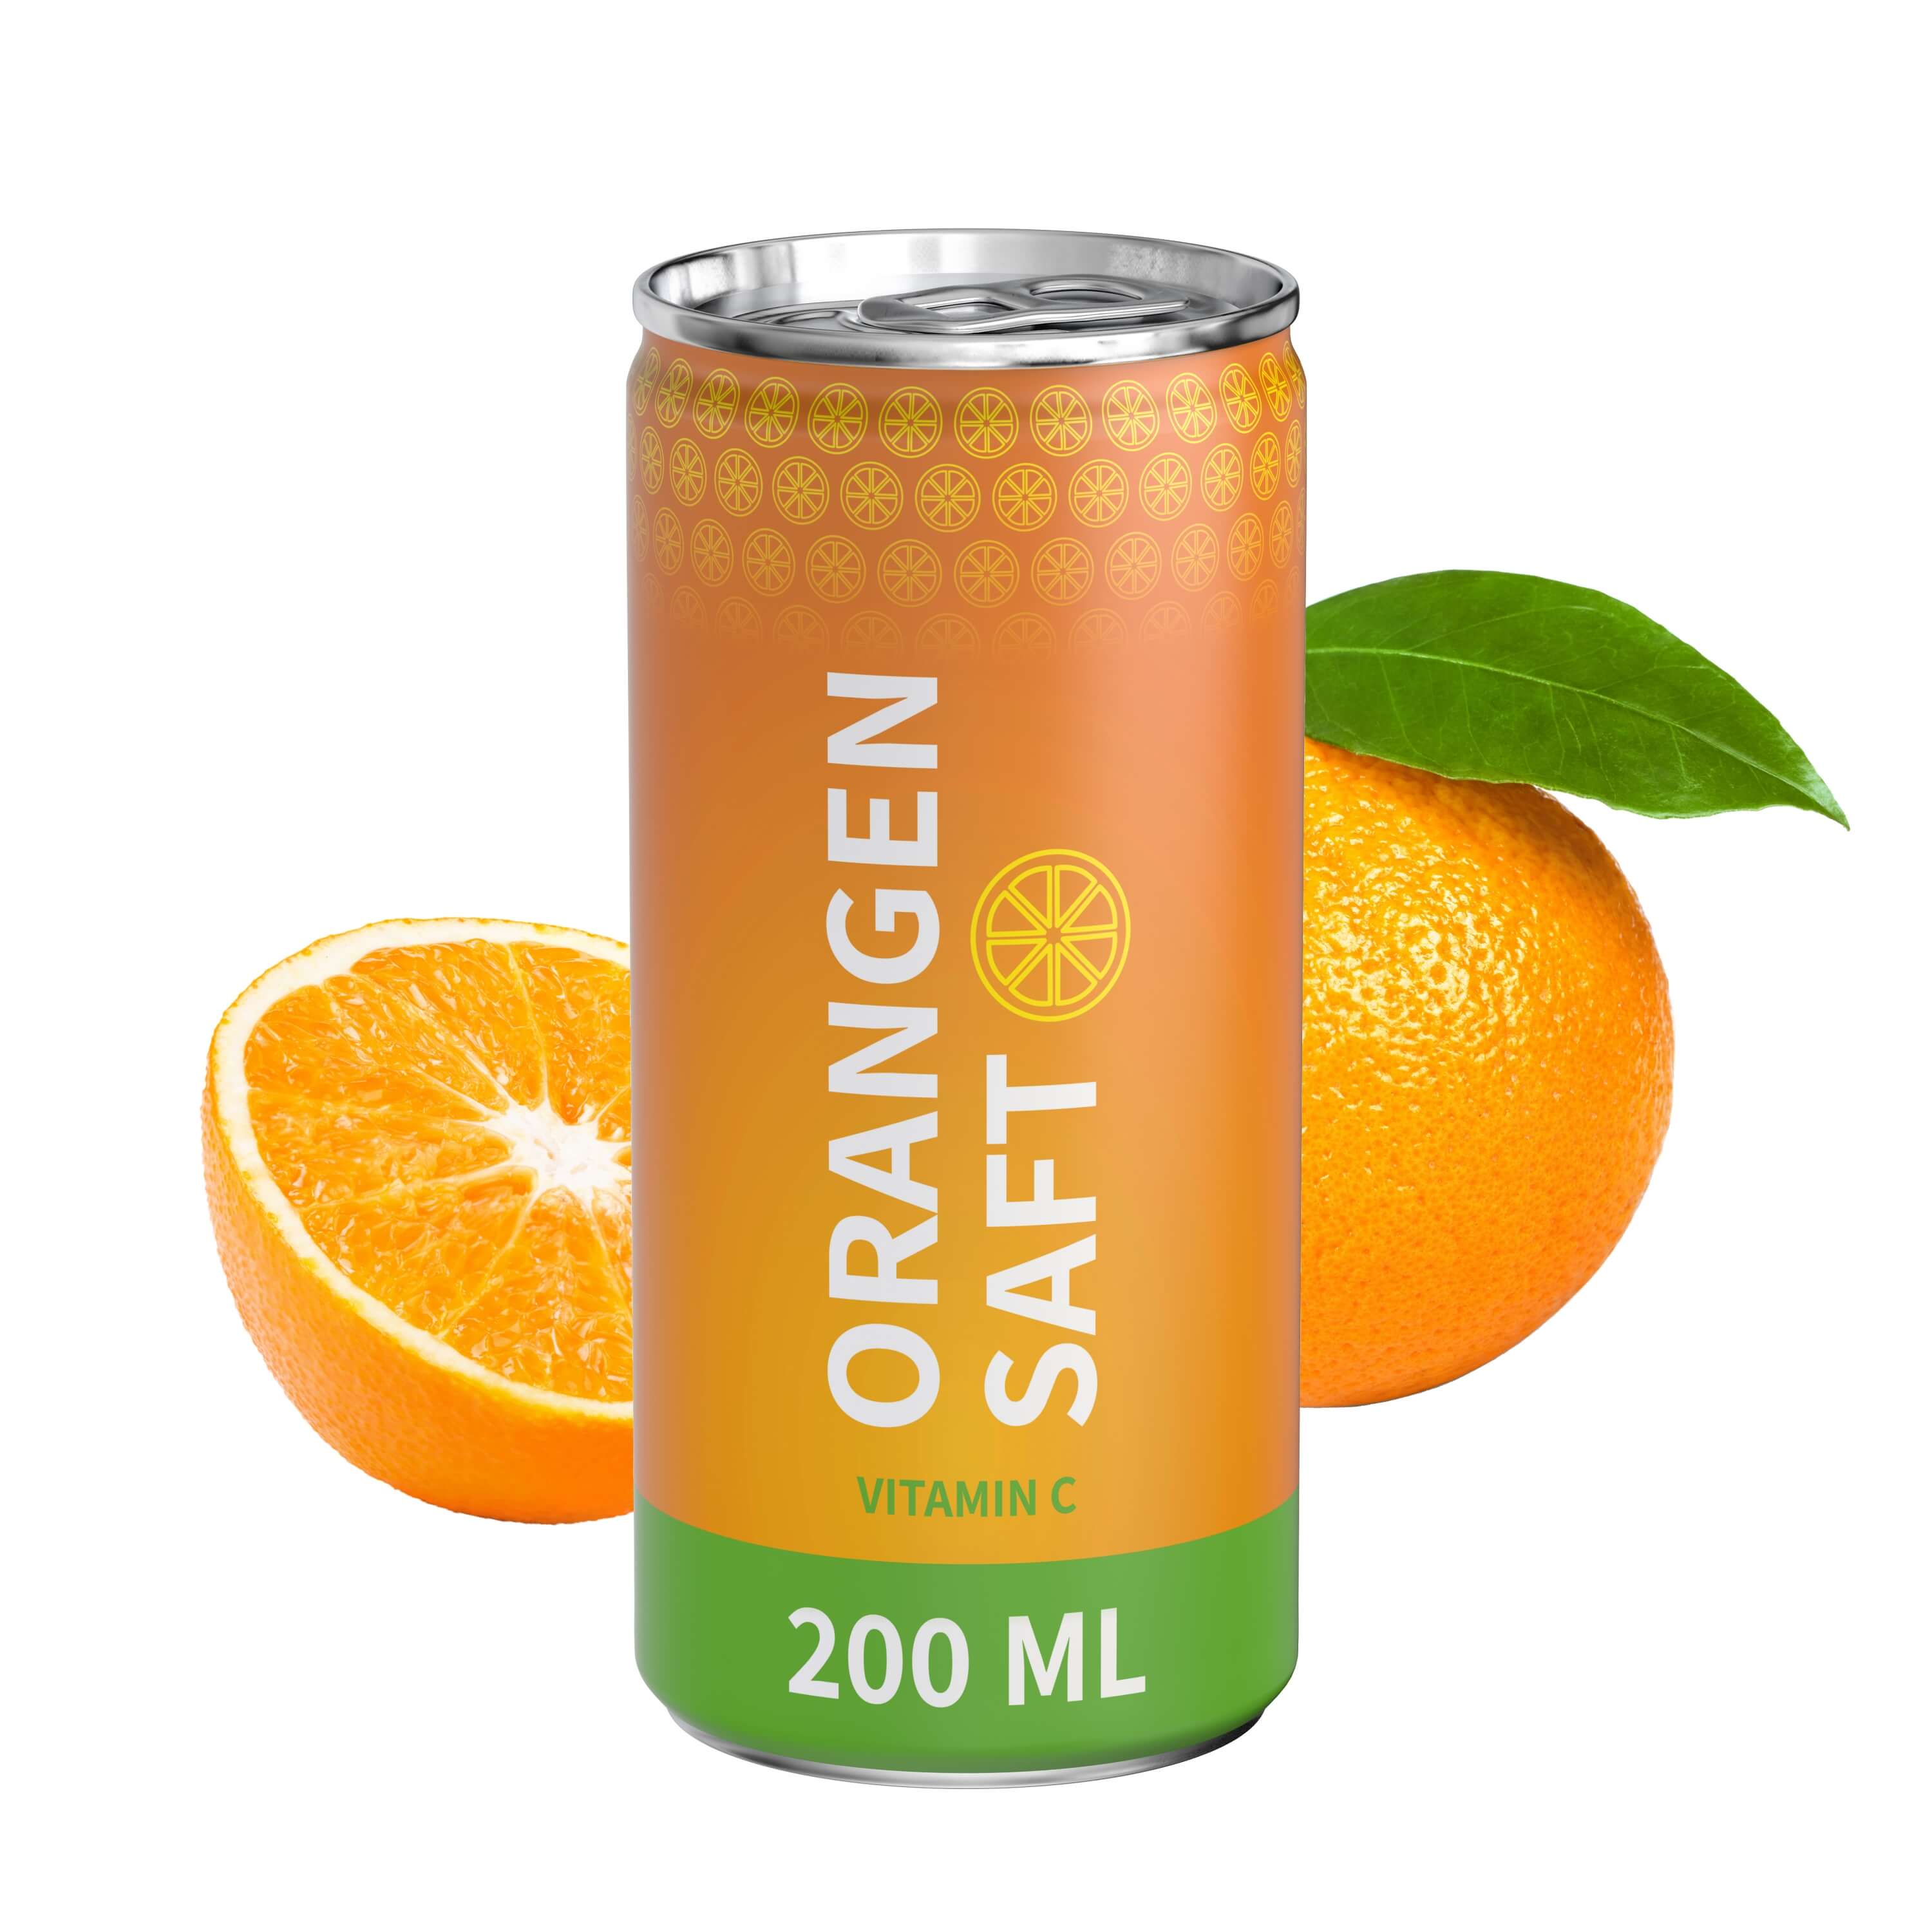 
Orangensaft